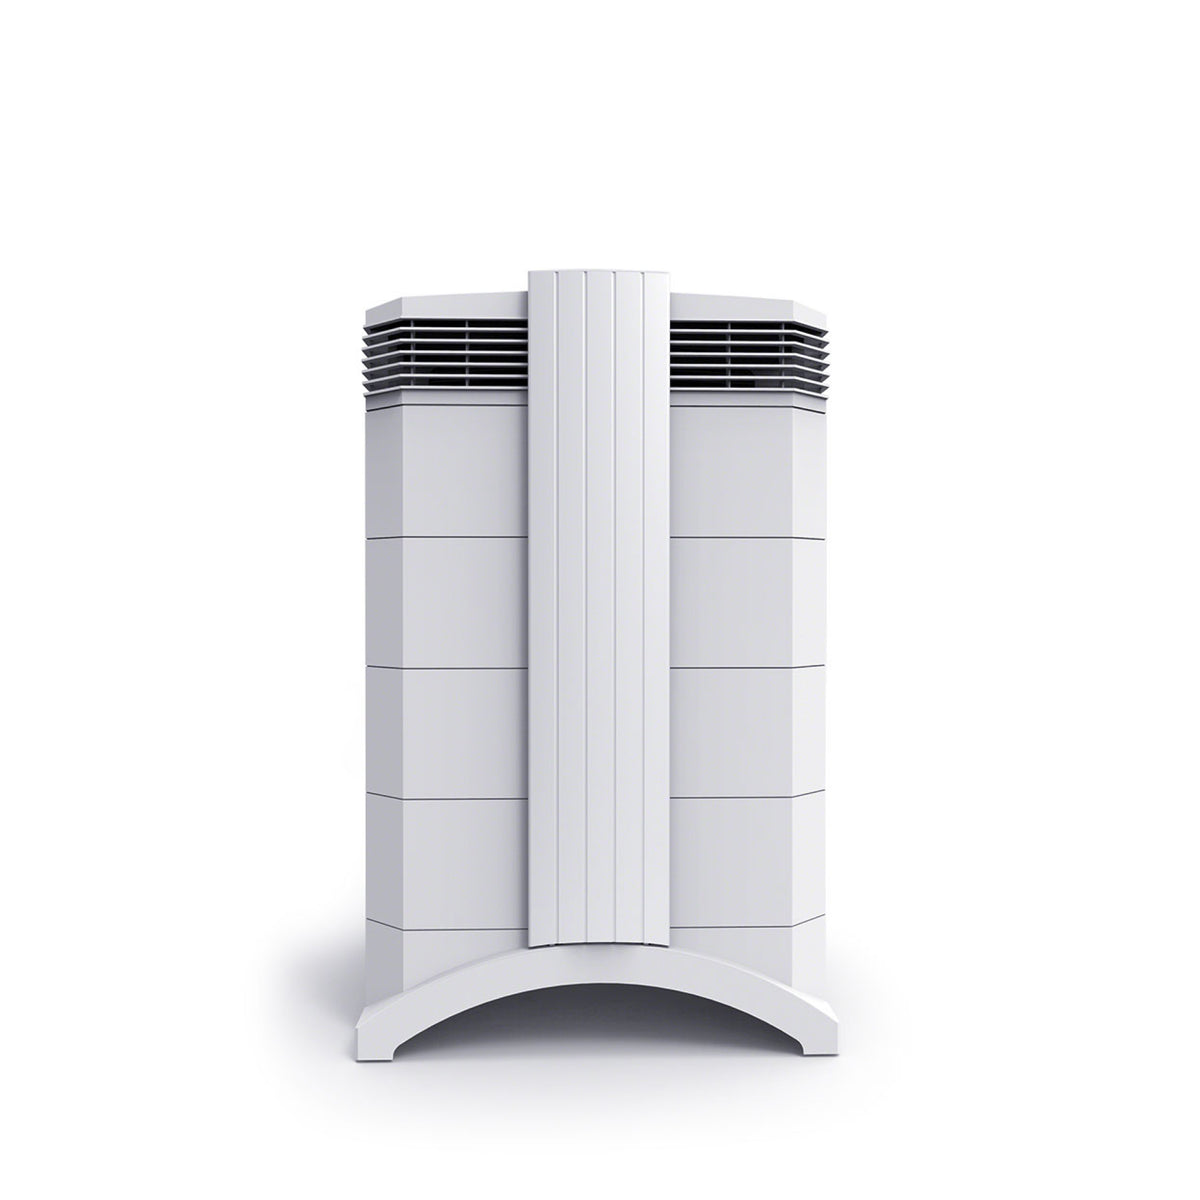 IQAir HealthPro Series air purifier